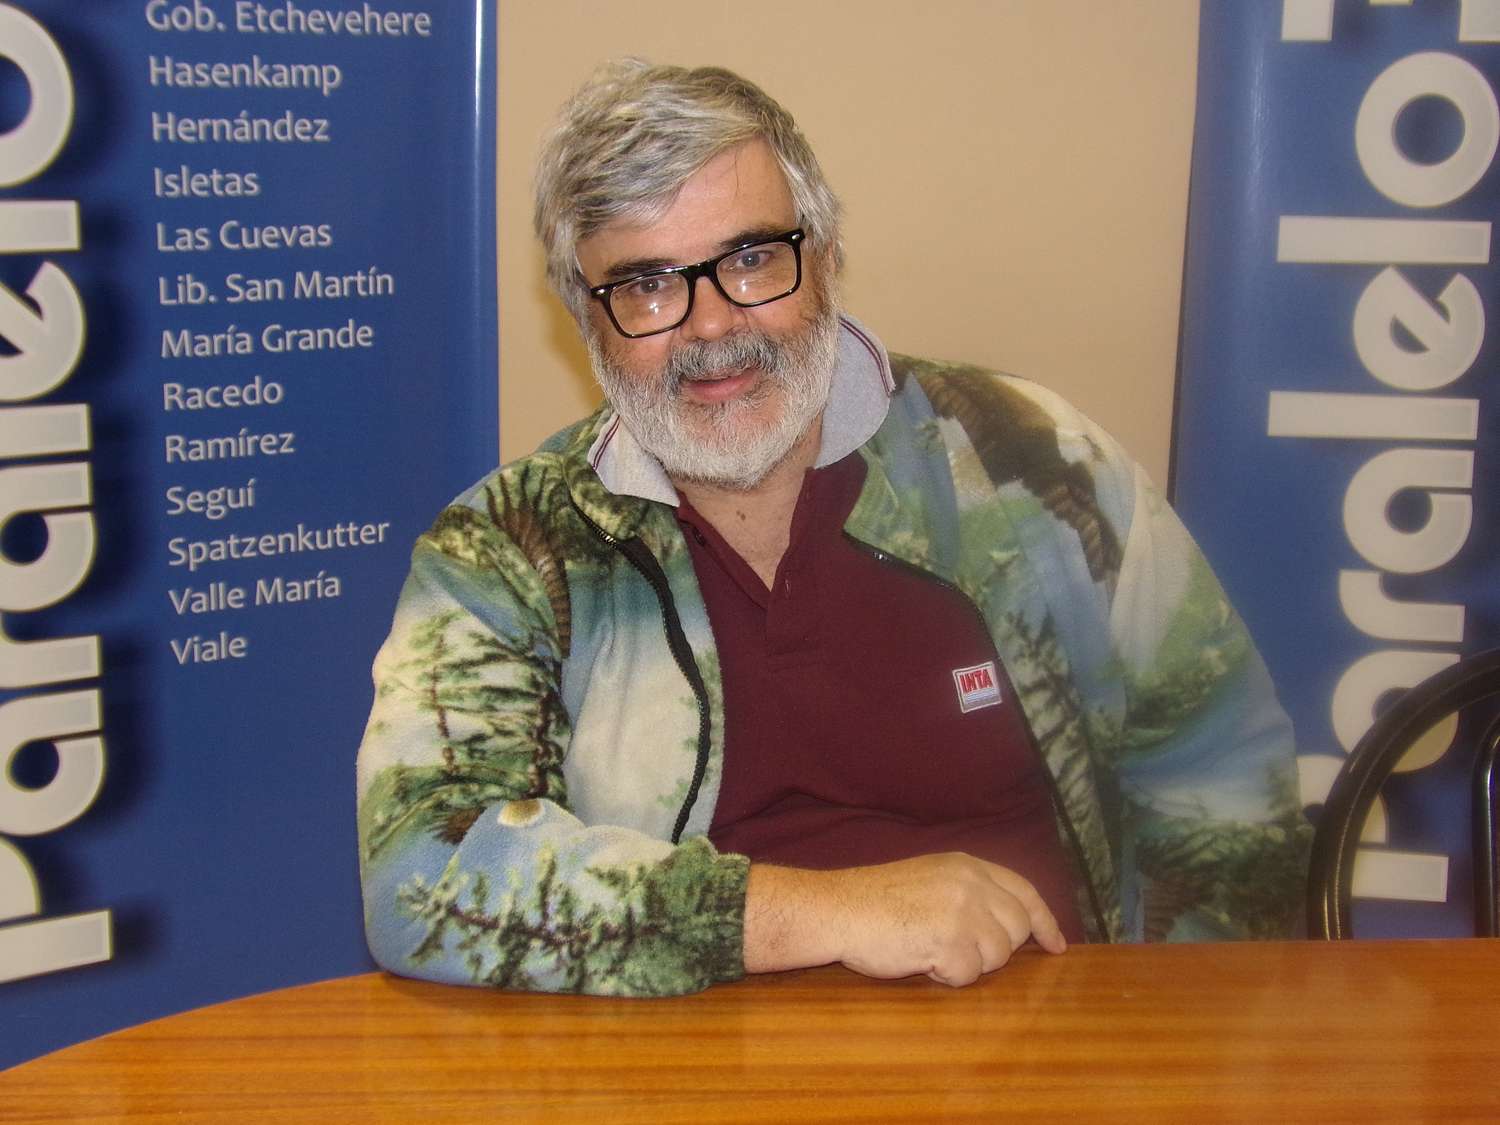 “Las casas de madera mejoran la calidad de vida de la gente”, indicó Martín Sánchez Acosta